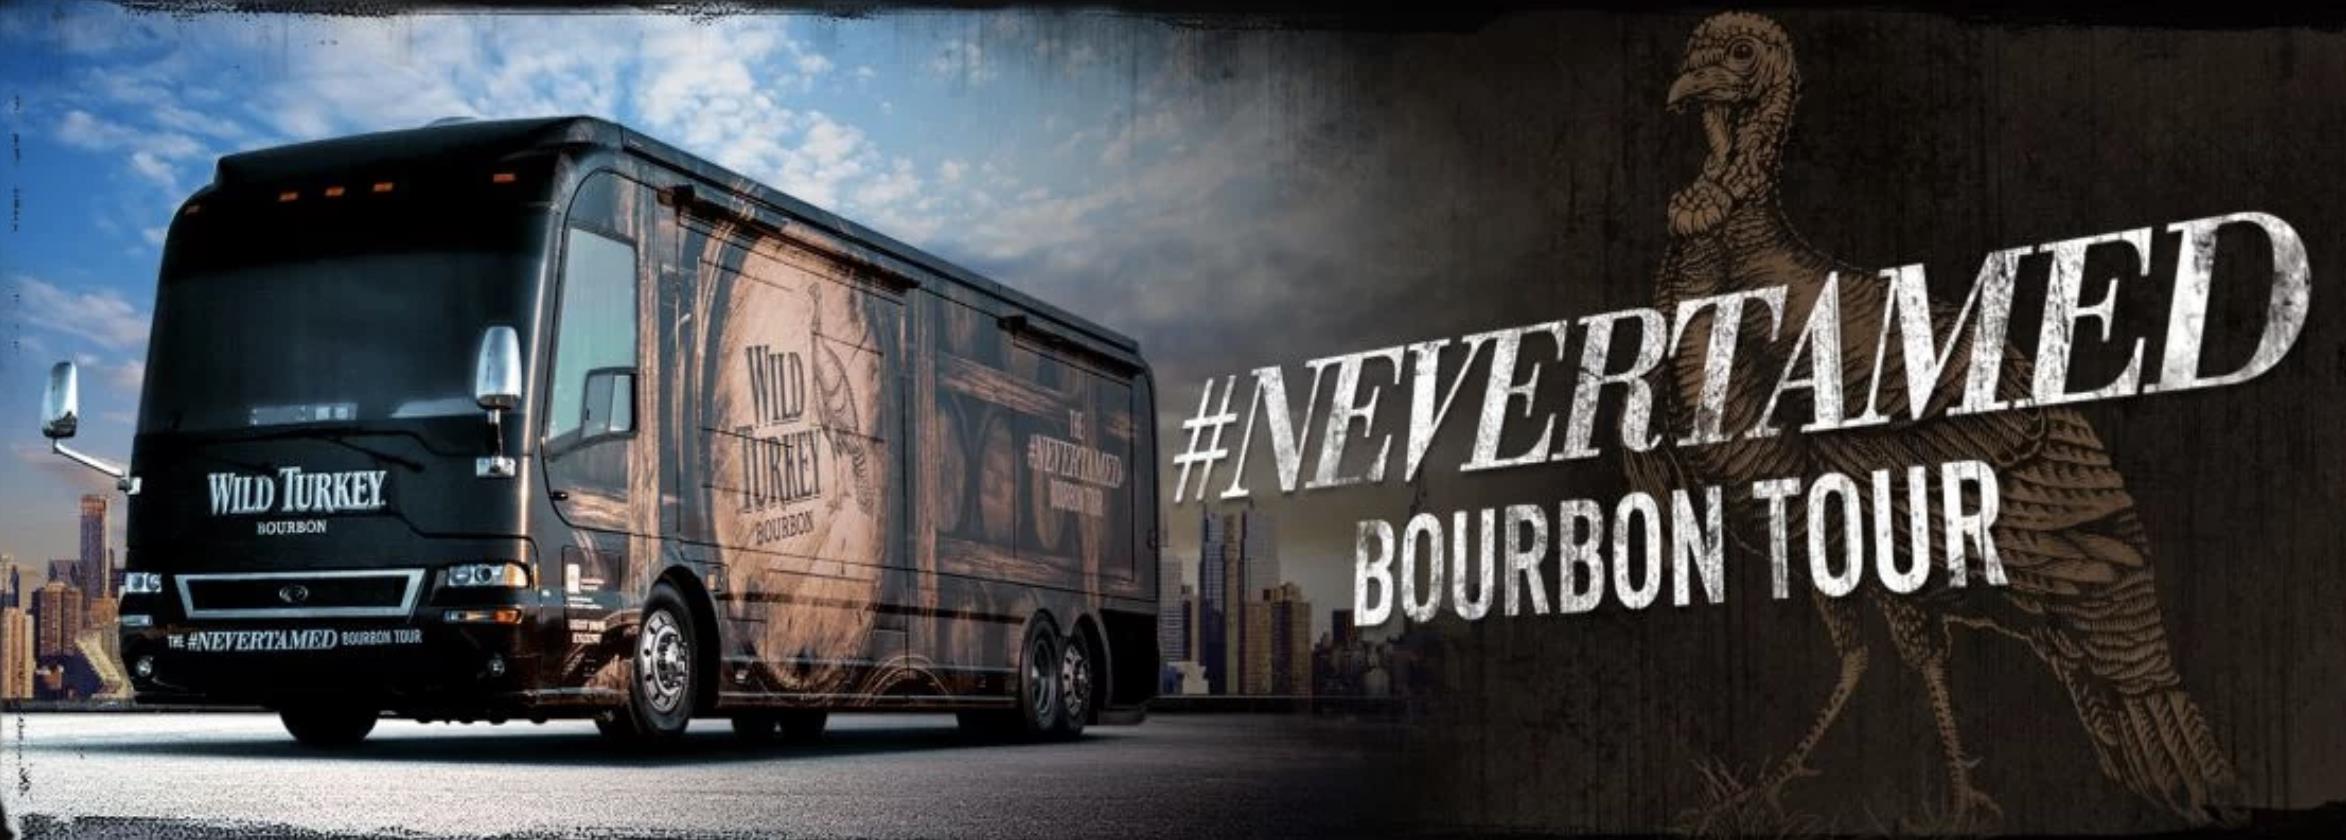 Wild Turkey - Bourbon Tour Bus Campaign